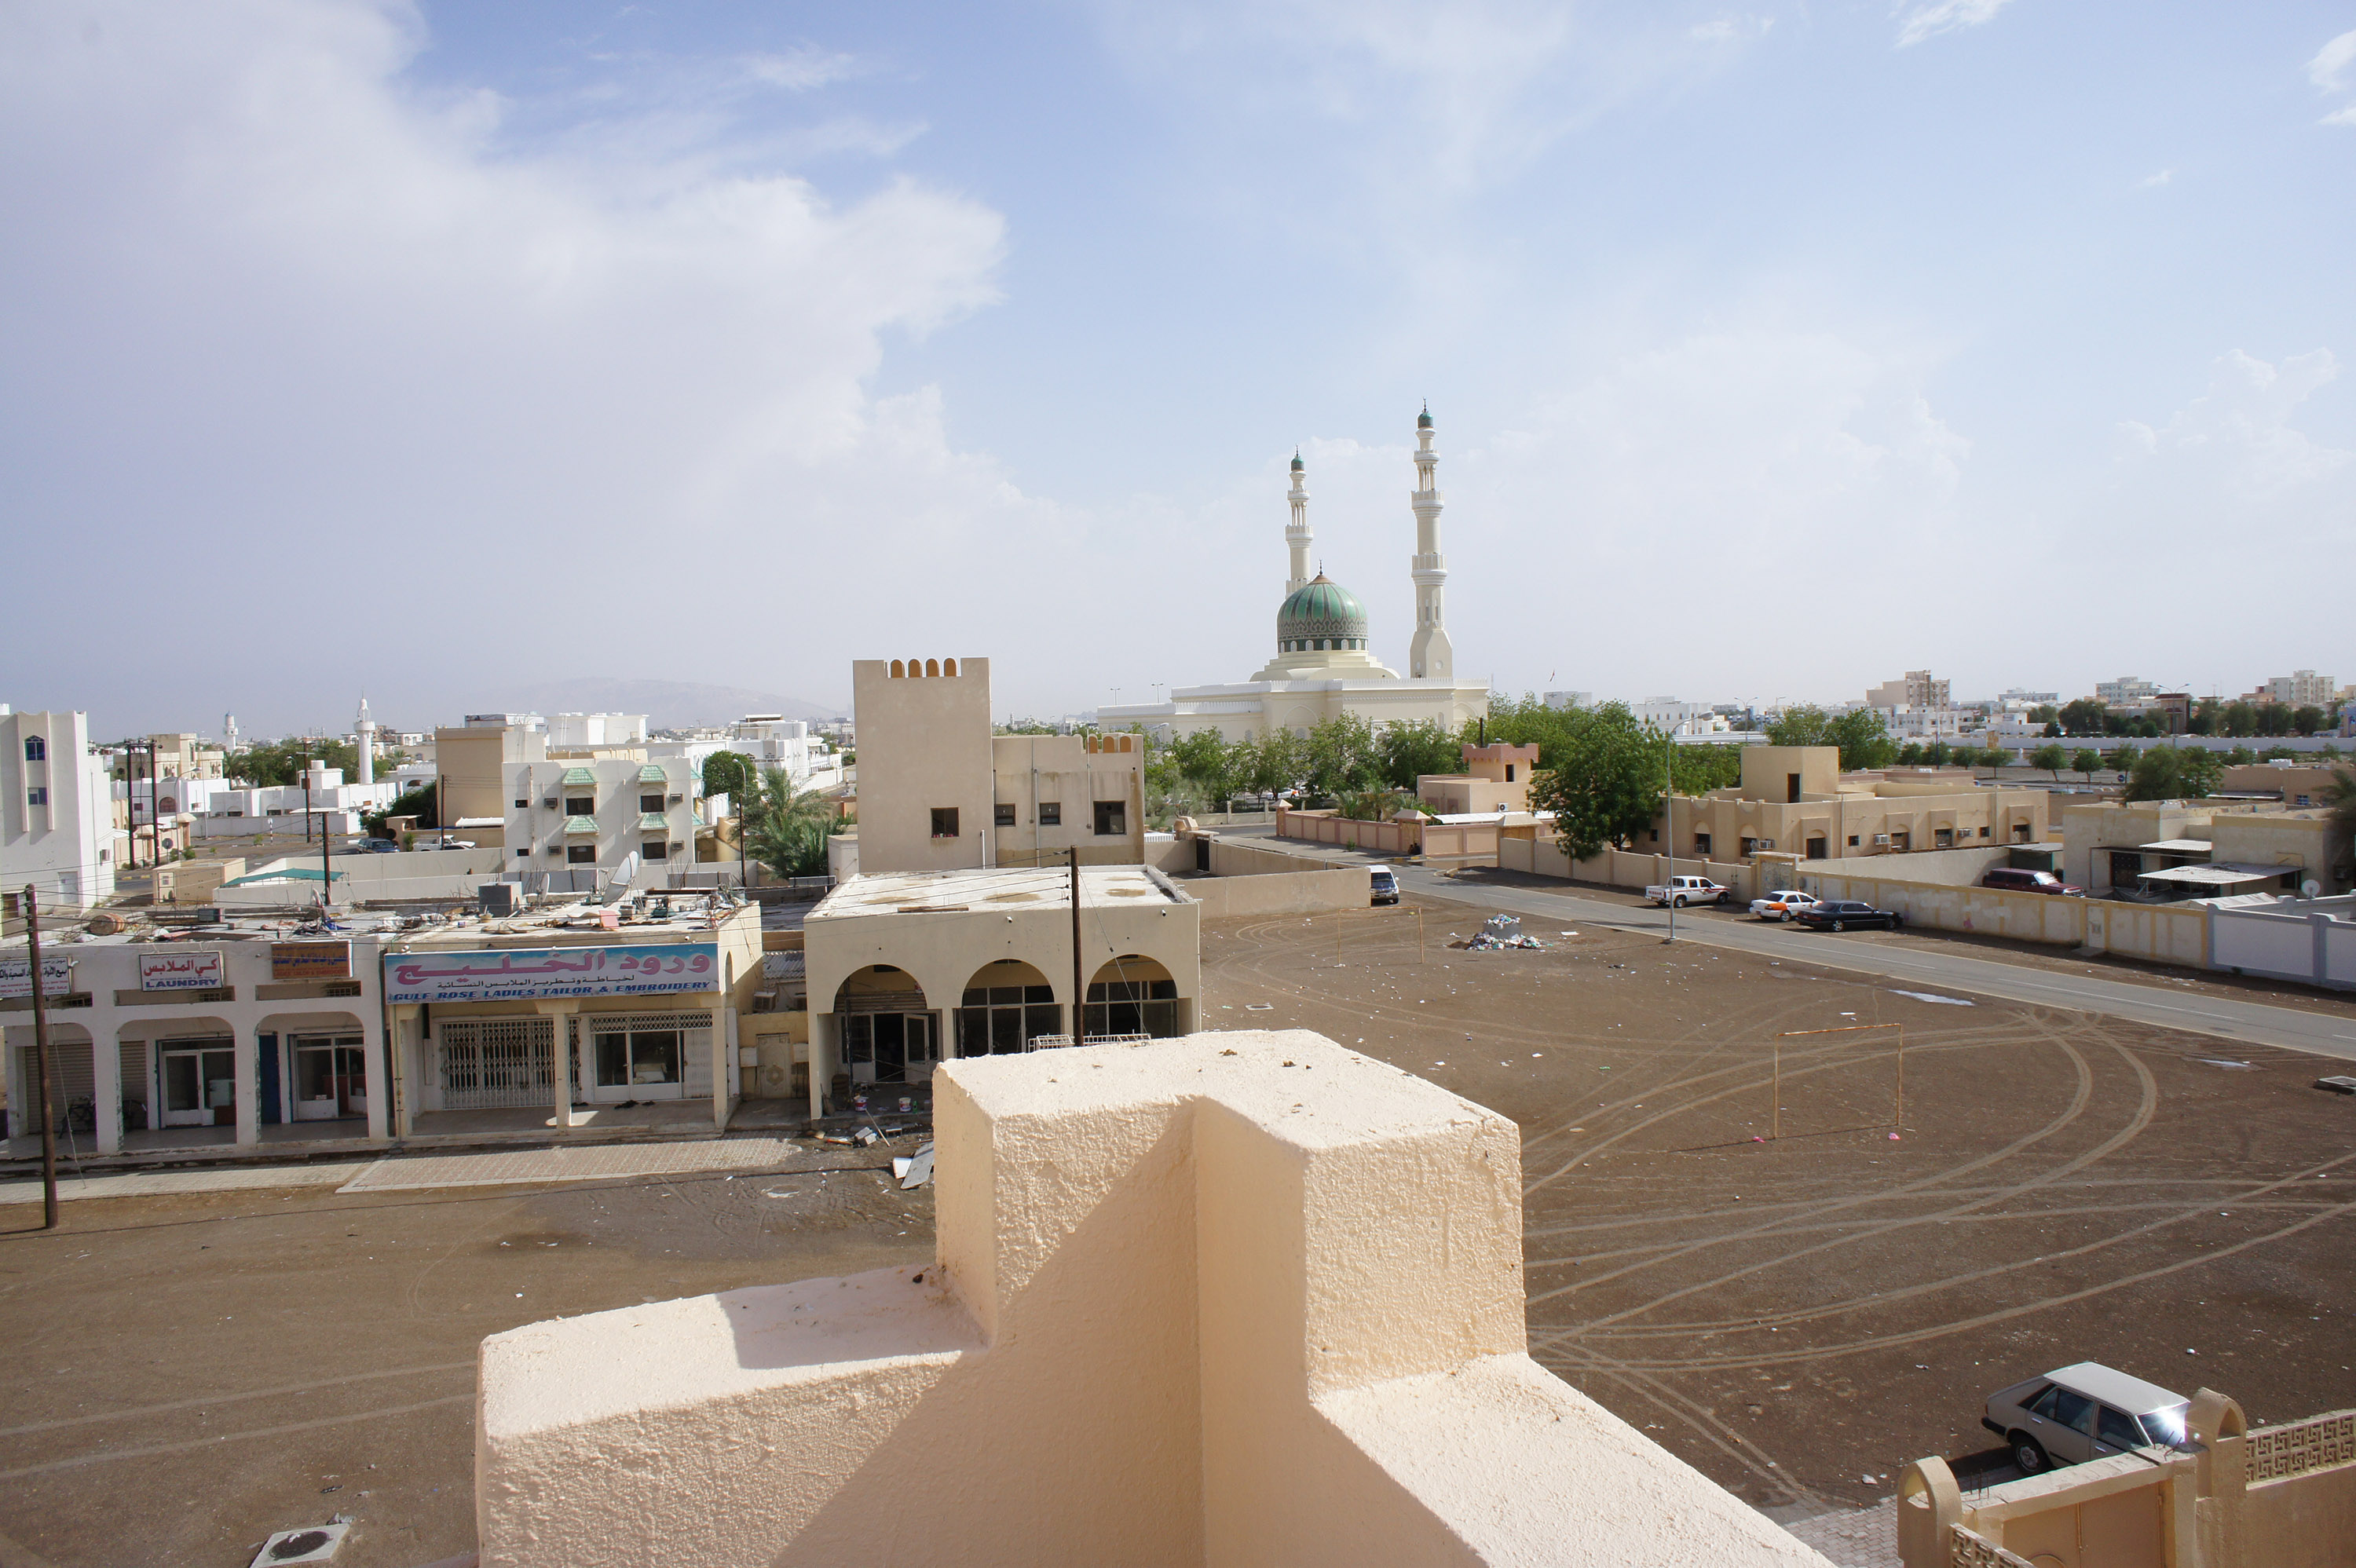 Camel smuggler reined in by Oman police